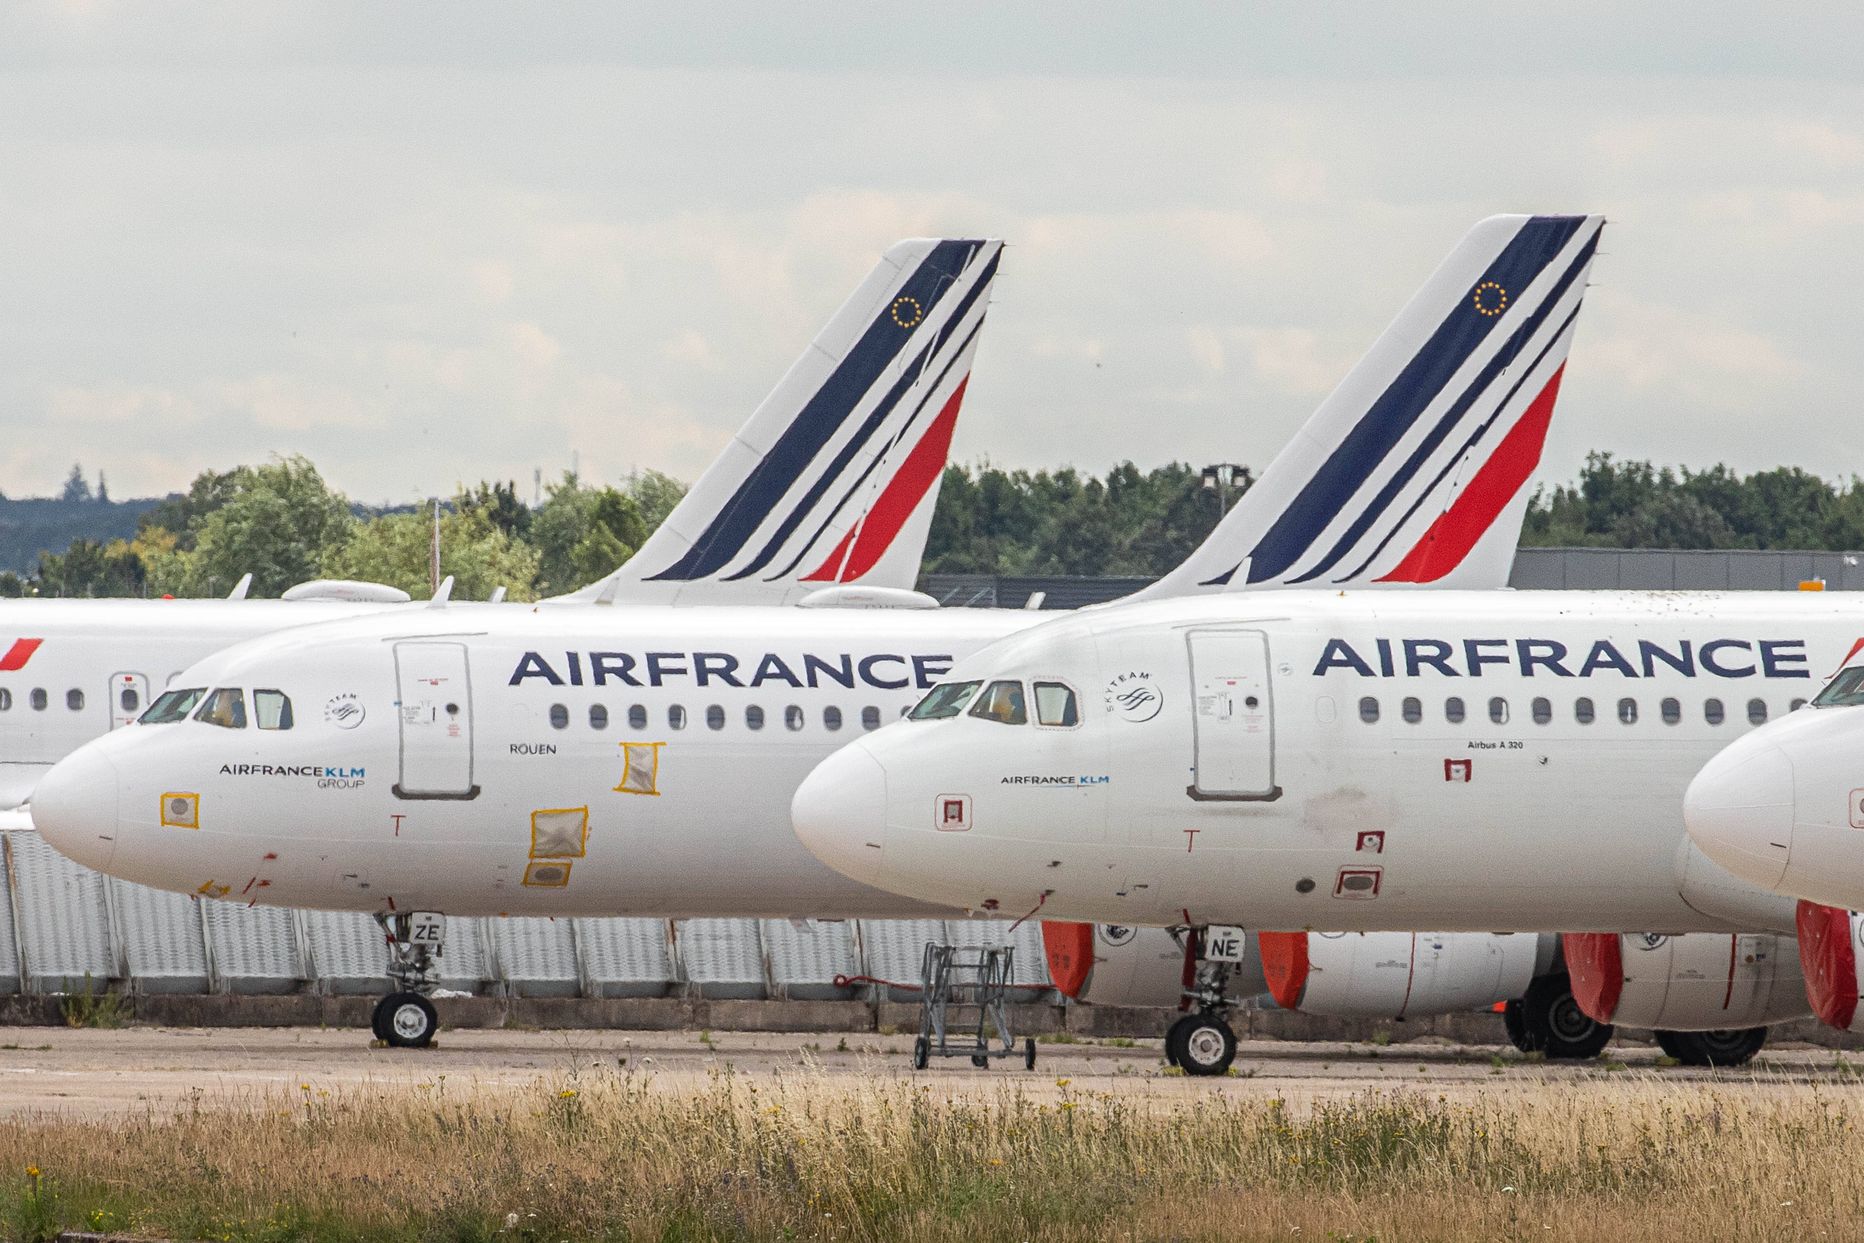 Air France'i lennukid Orly lennuväljal.